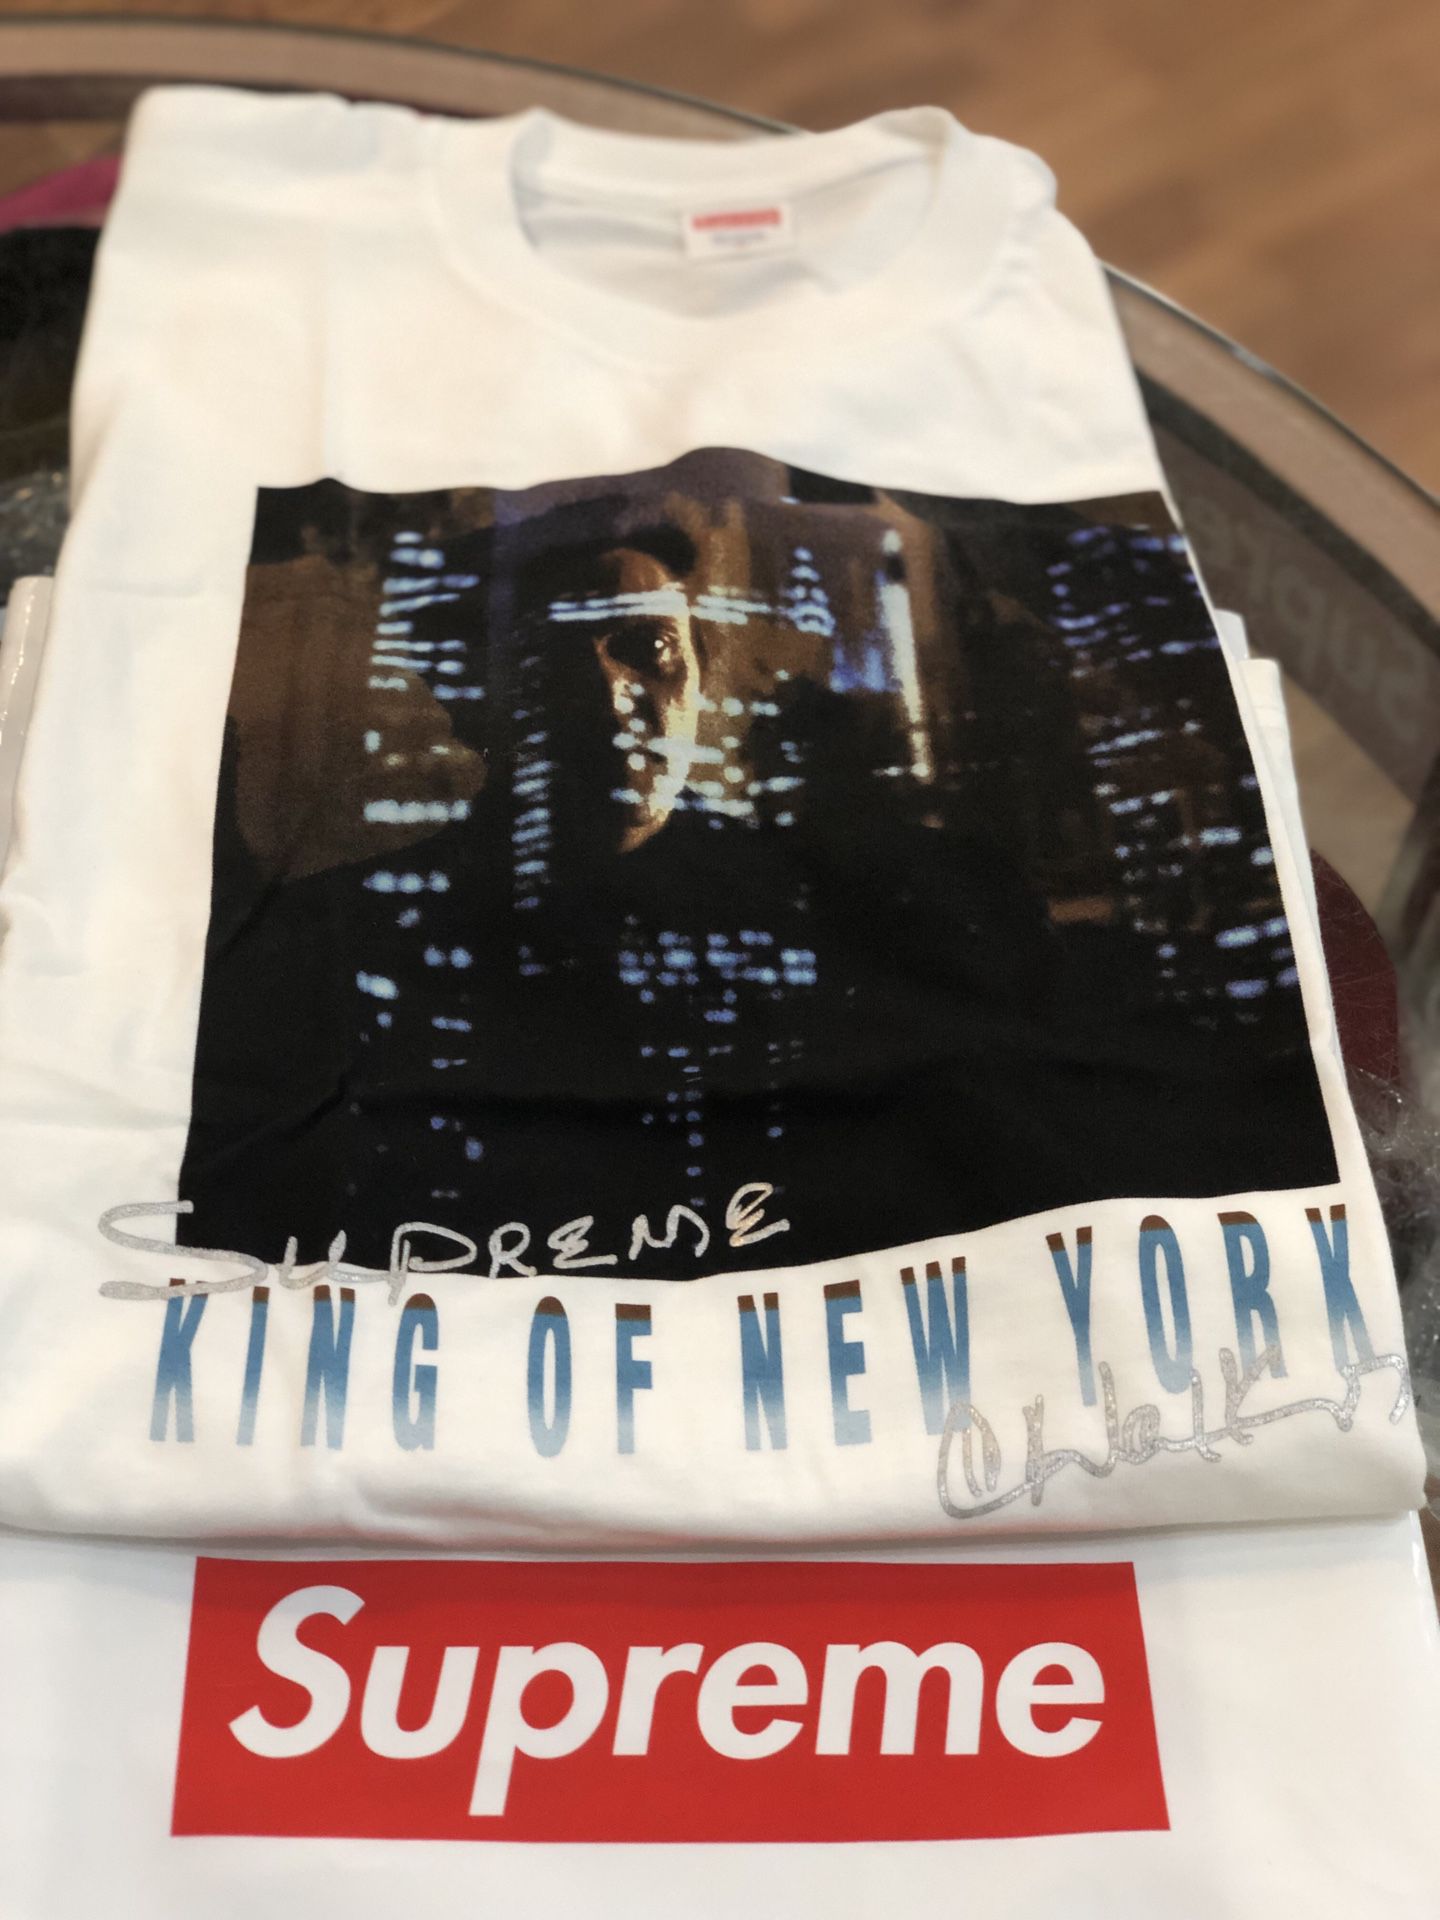 Brand new White Supreme King og New York T-shirt size medium